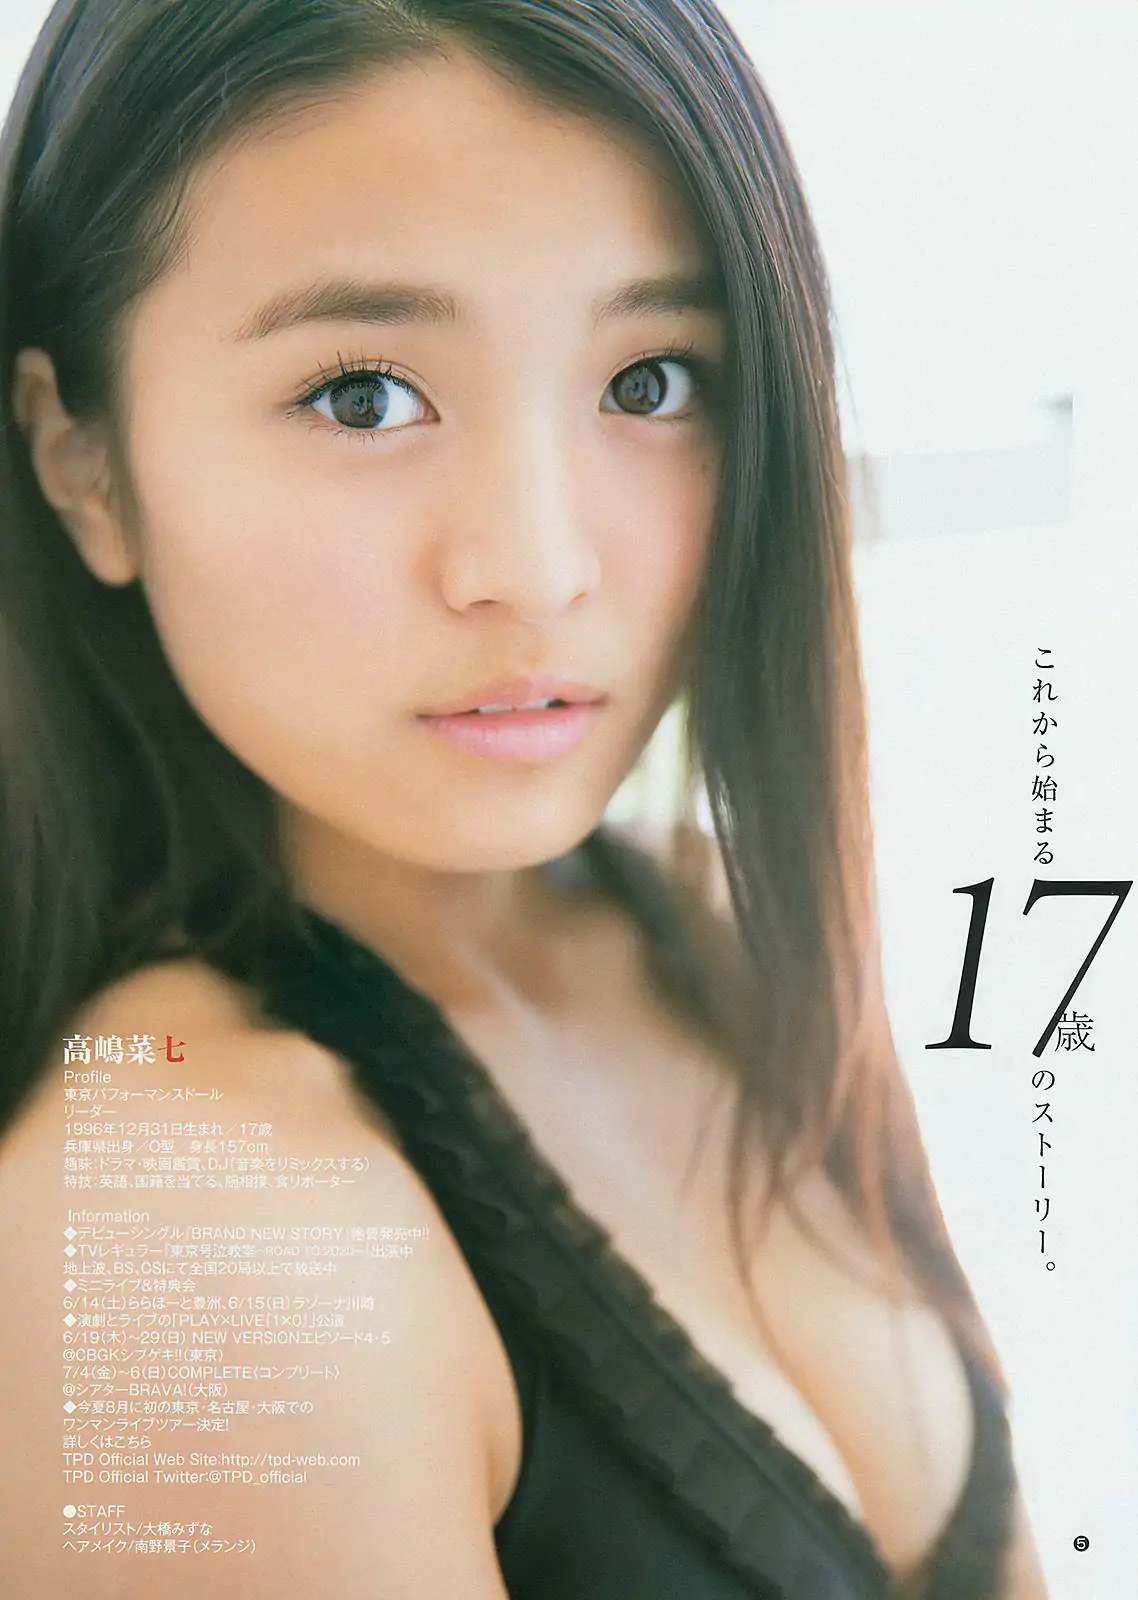 川栄李奈 橋本真帆 高嶋菜七 [Weekly Young Jump] 2014年No.28 写真杂志